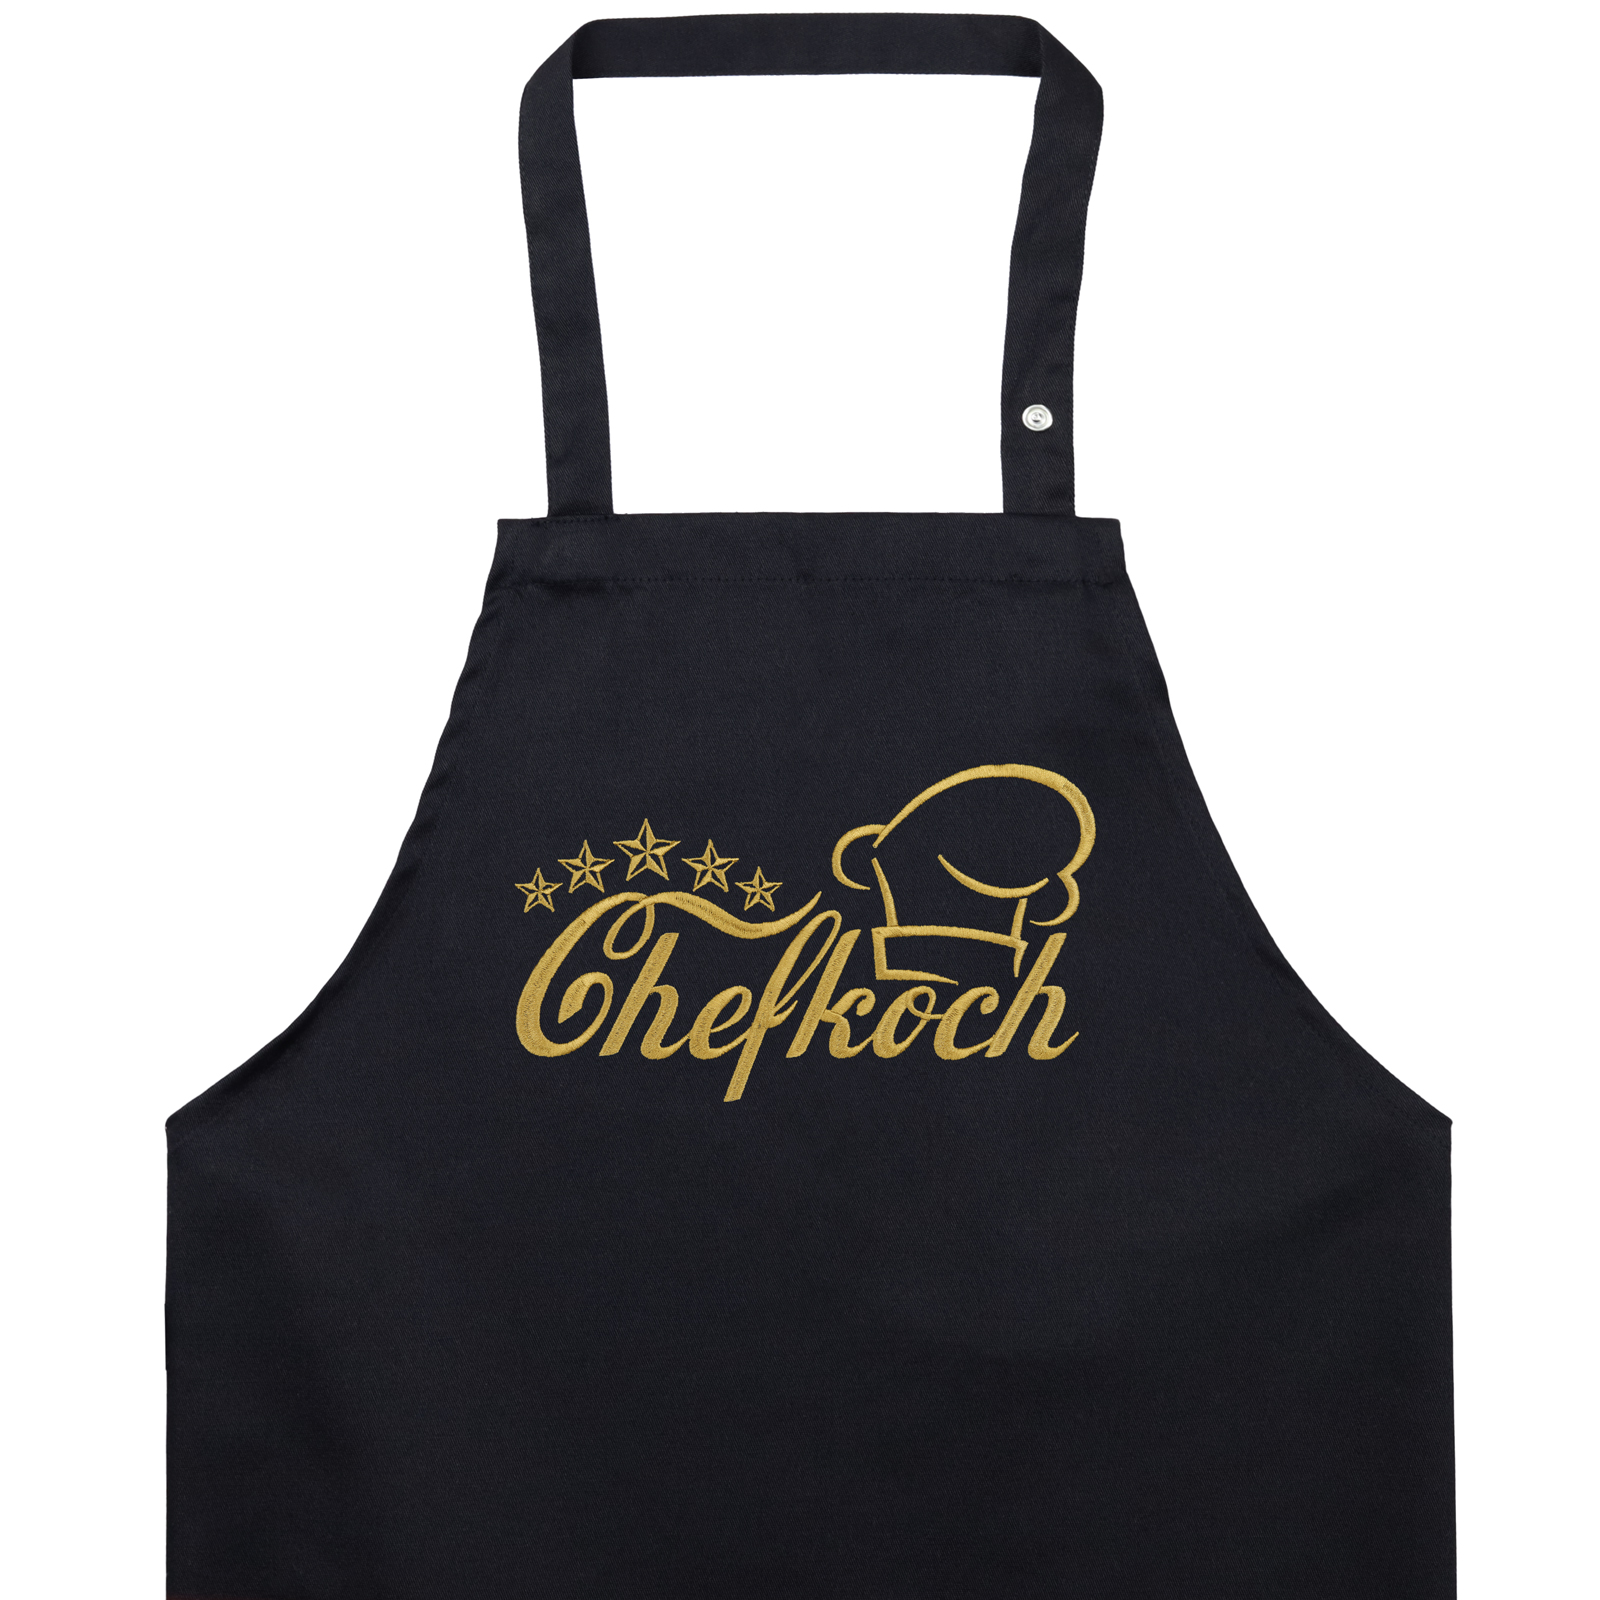 Chefkoch - Kochschürze